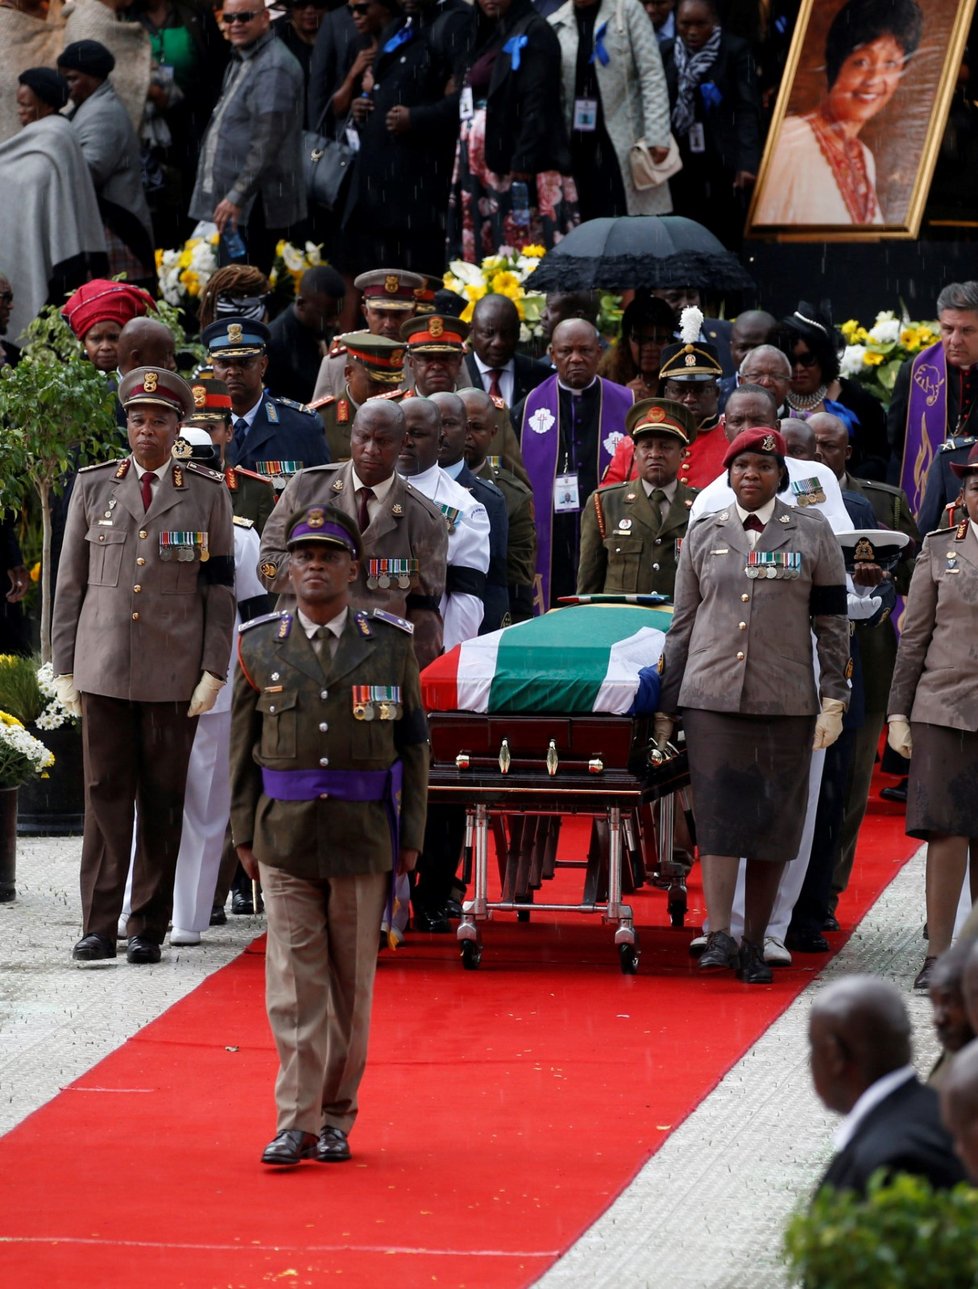 Vojáci odnáší rakev Winnie Mandelové z místa pohřebního ceremoniálu ve městě Soweto.